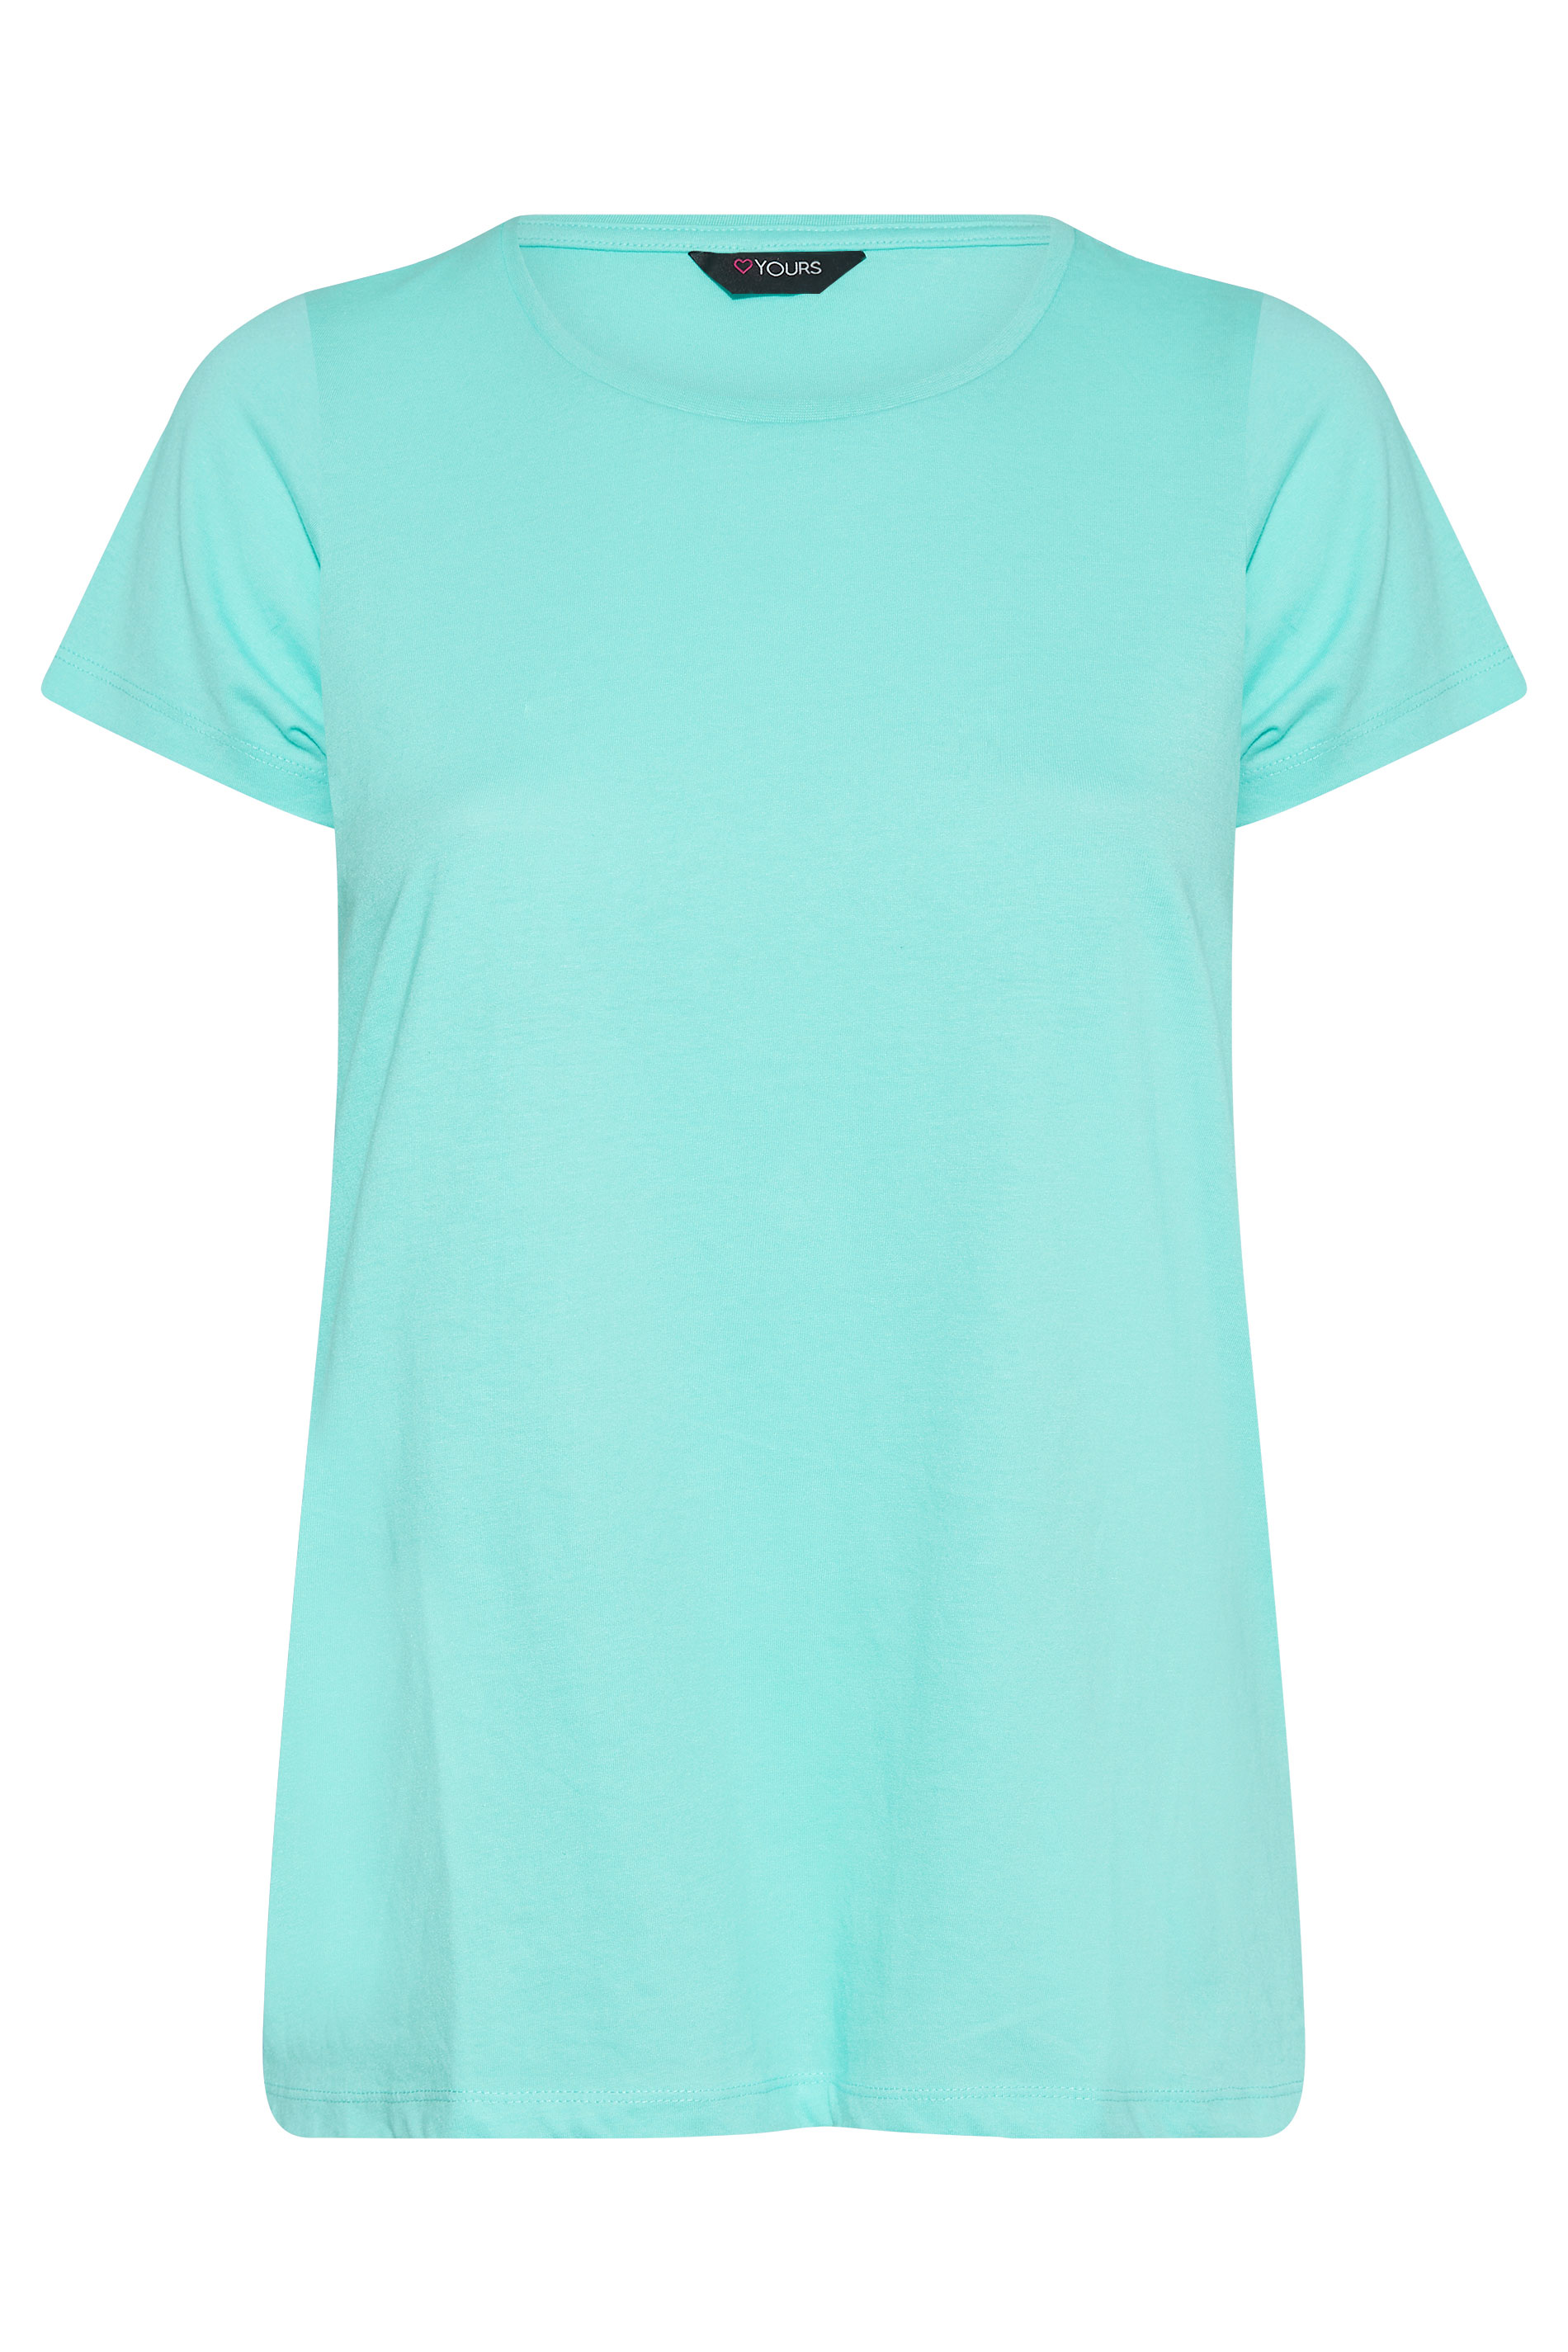 Grande taille  Tops Grande taille  T-Shirts Basiques & Débardeurs | T-Shirt Bleu Clair en Jersey - BK83023